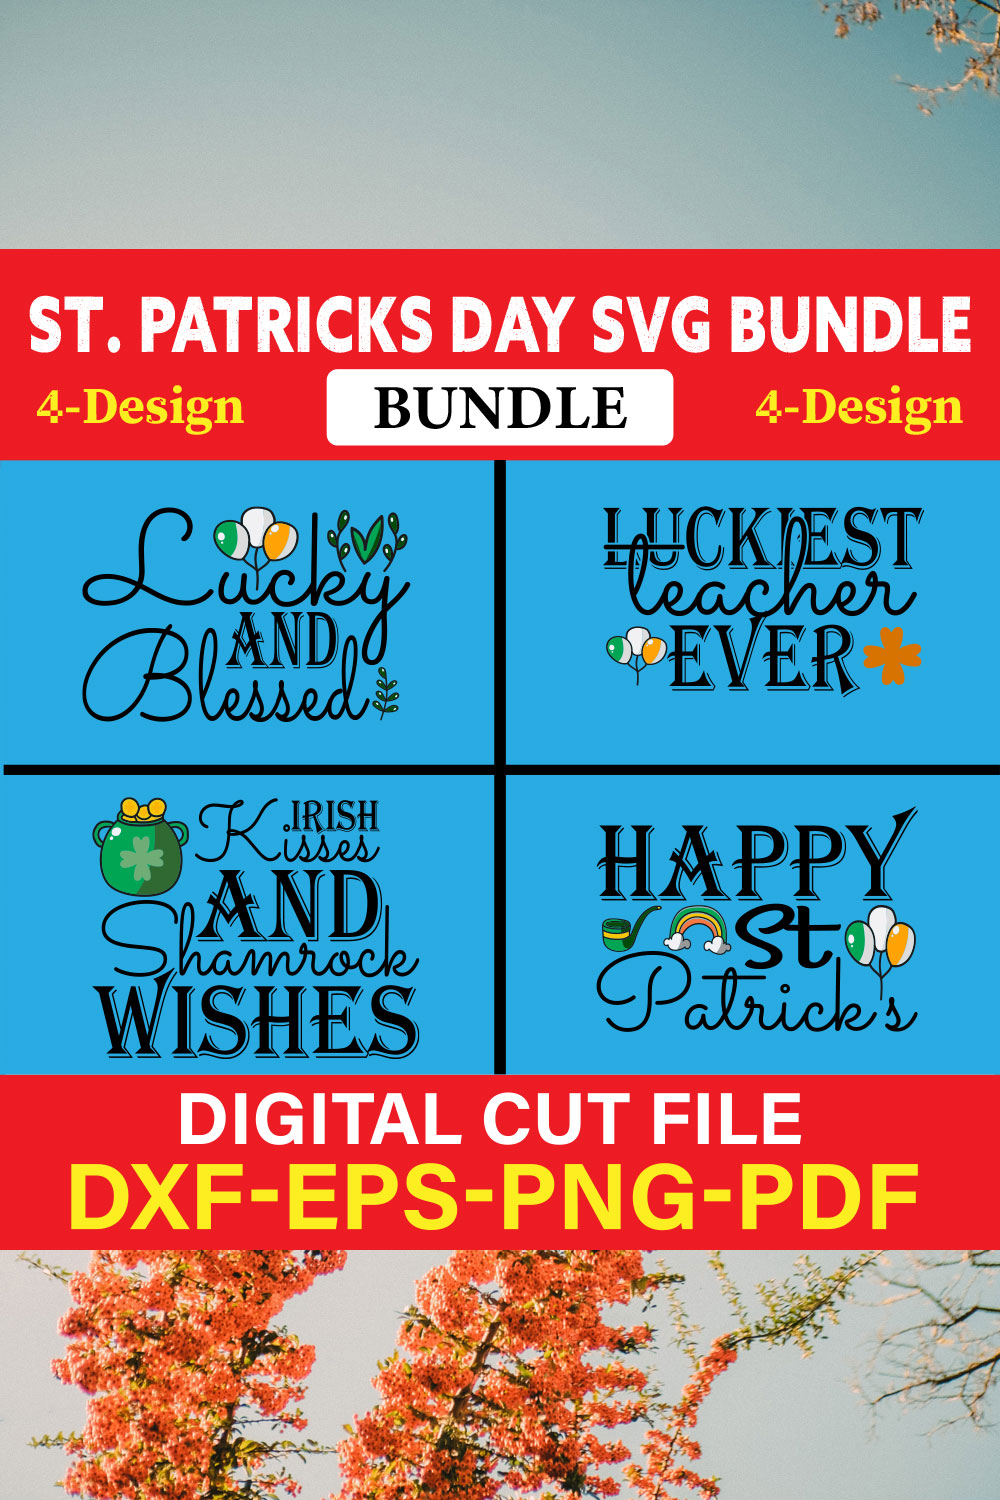 St Patrick's Day T-shirt Design Bundle Vol-17 pinterest preview image.